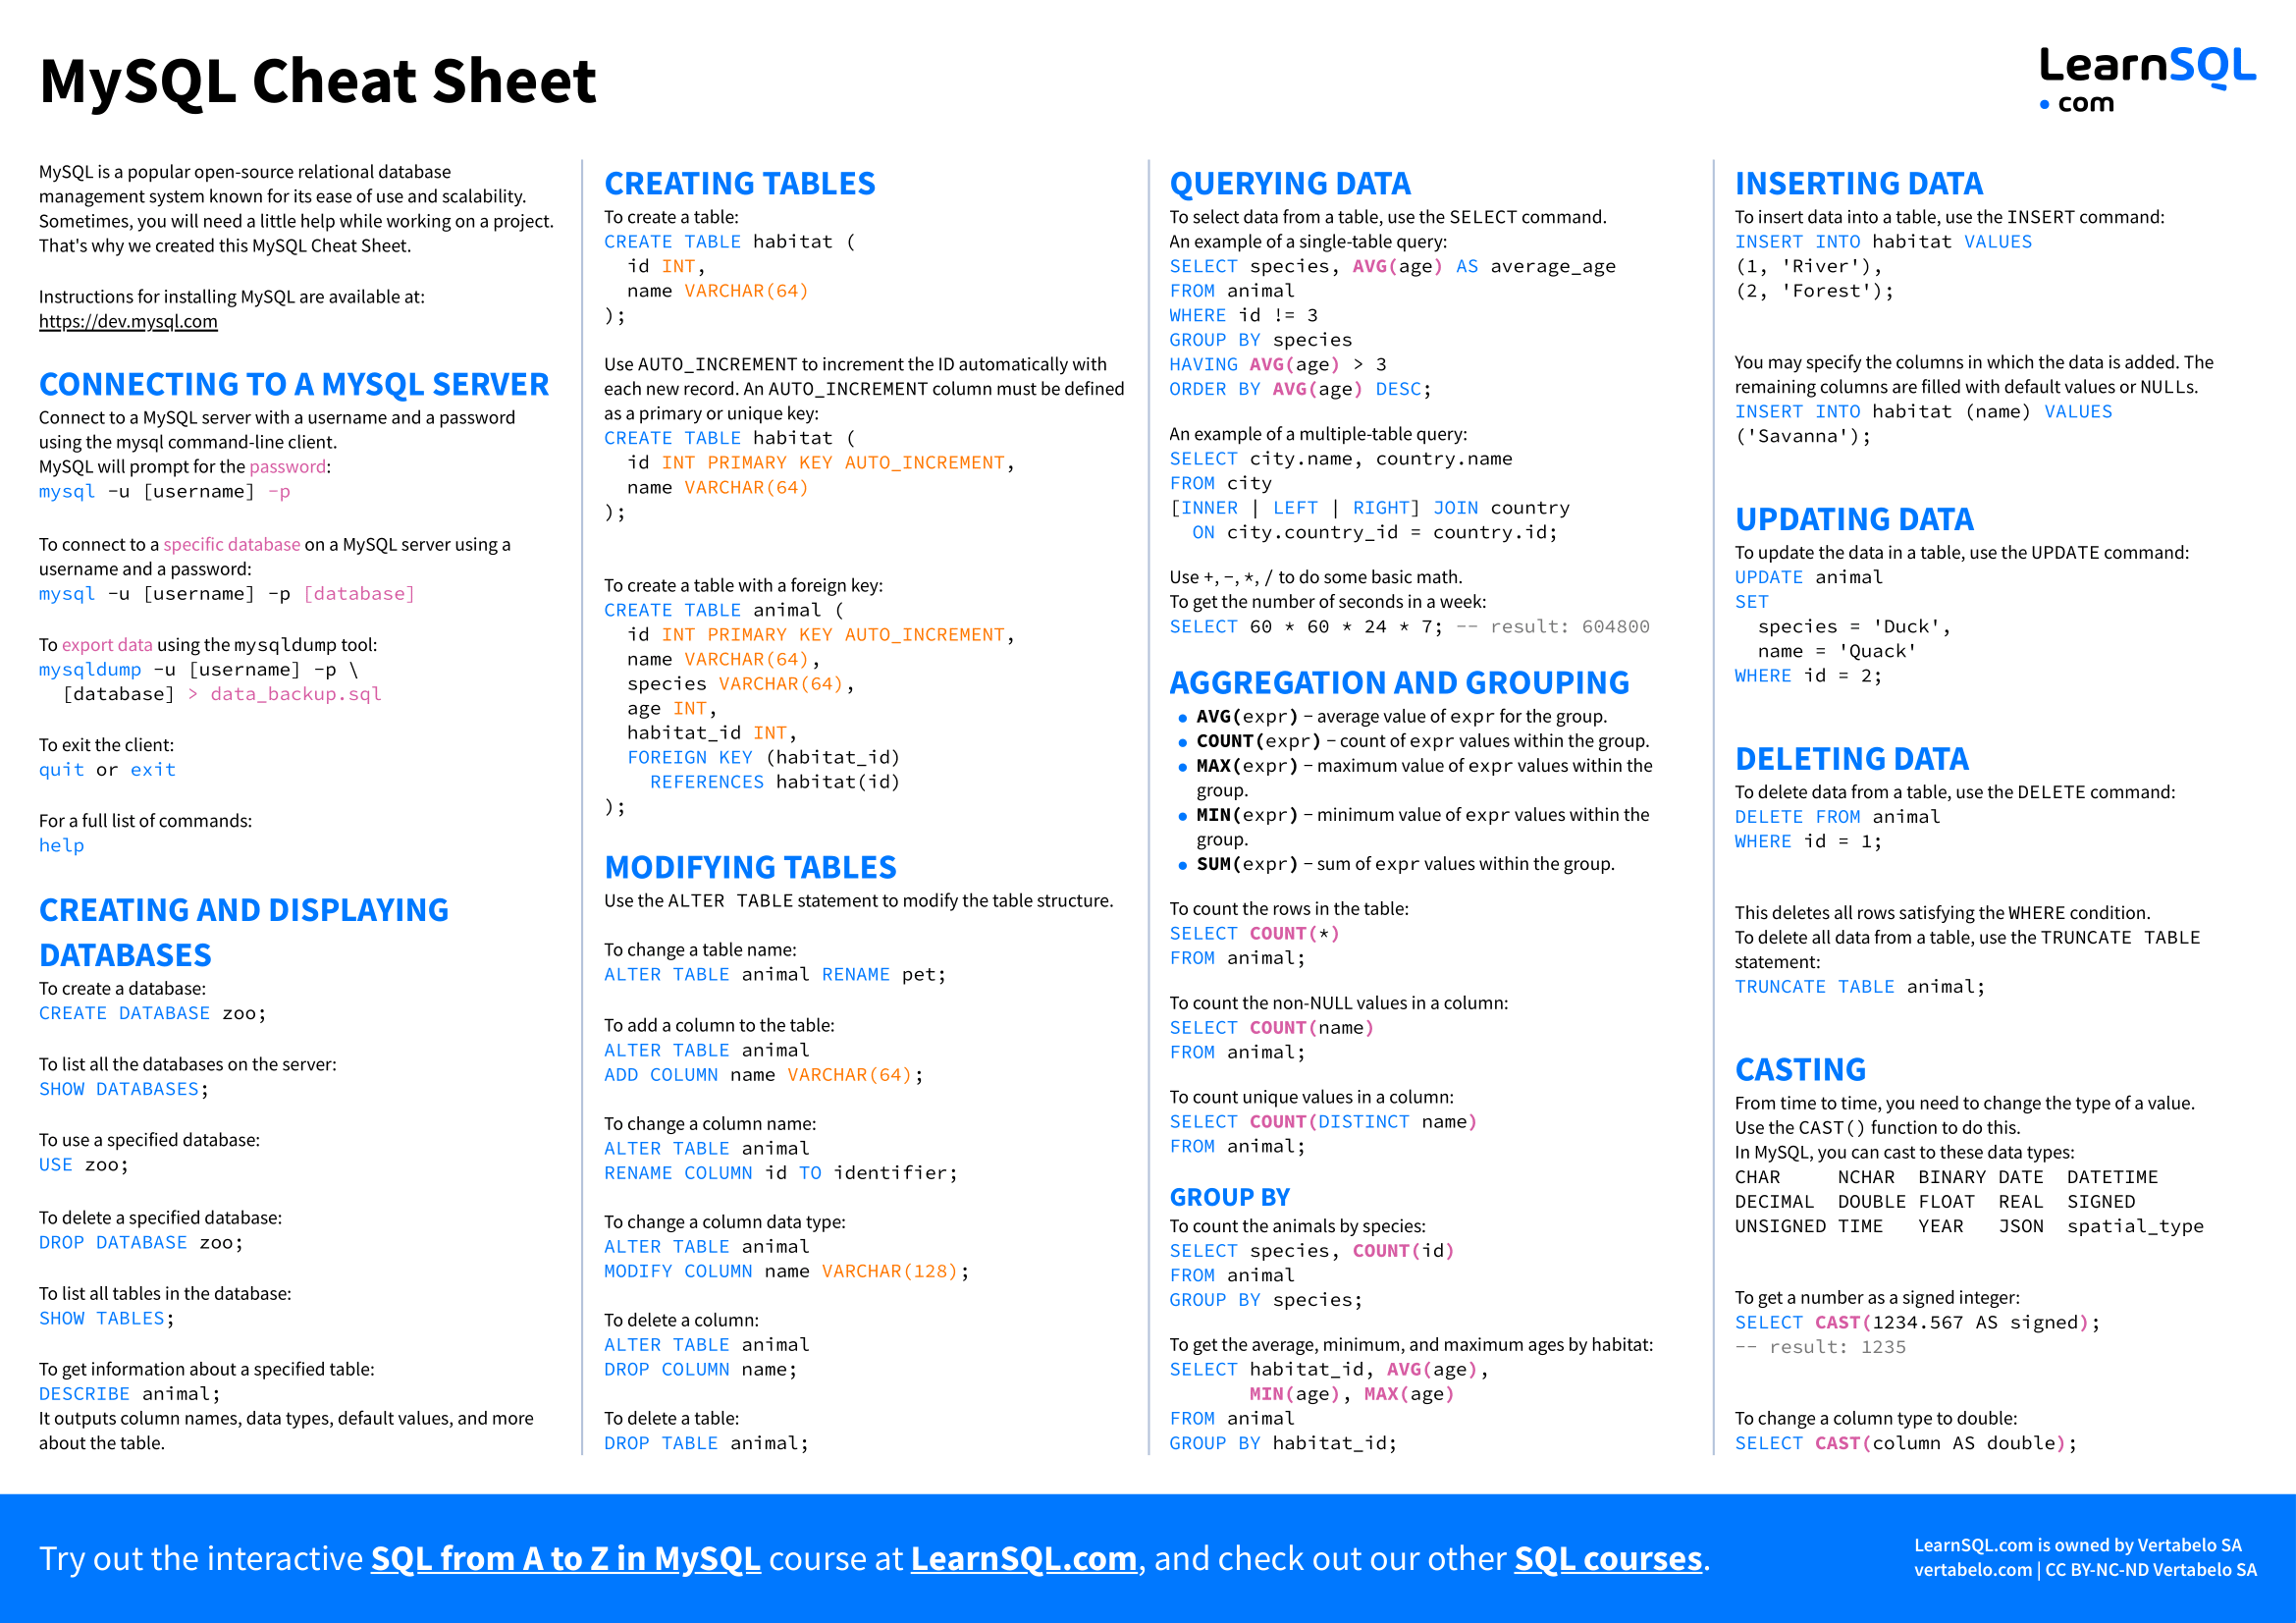 https://learnsql.com/blog/mysql-cheat-sheet/mysql-cheat-sheet-a4-page-1.png